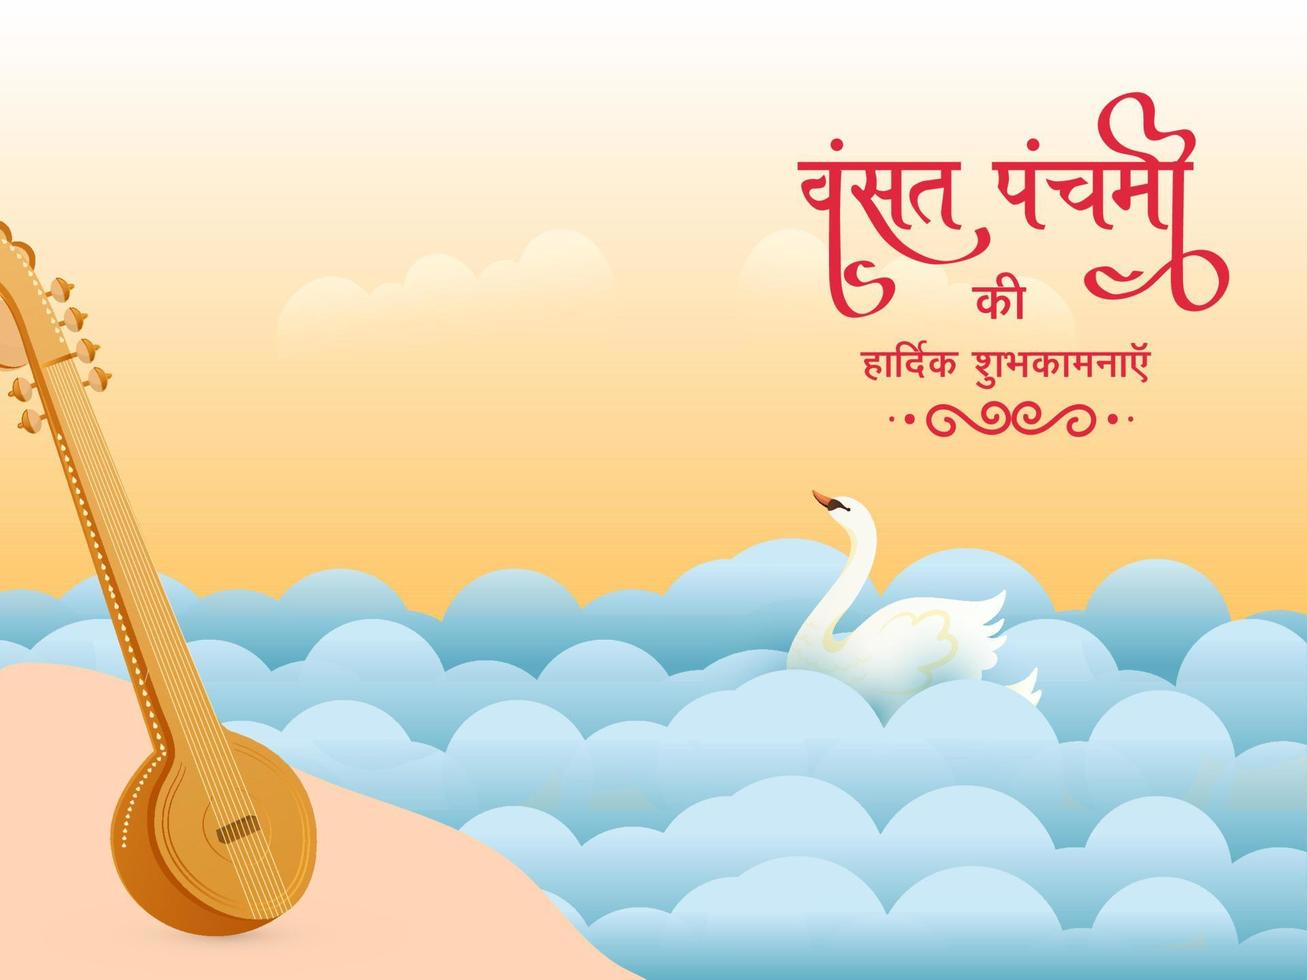 hindi texto melhor desejos do vasante panchami com Veena instrumento, cisne em papel cortar ondas fundo. vetor